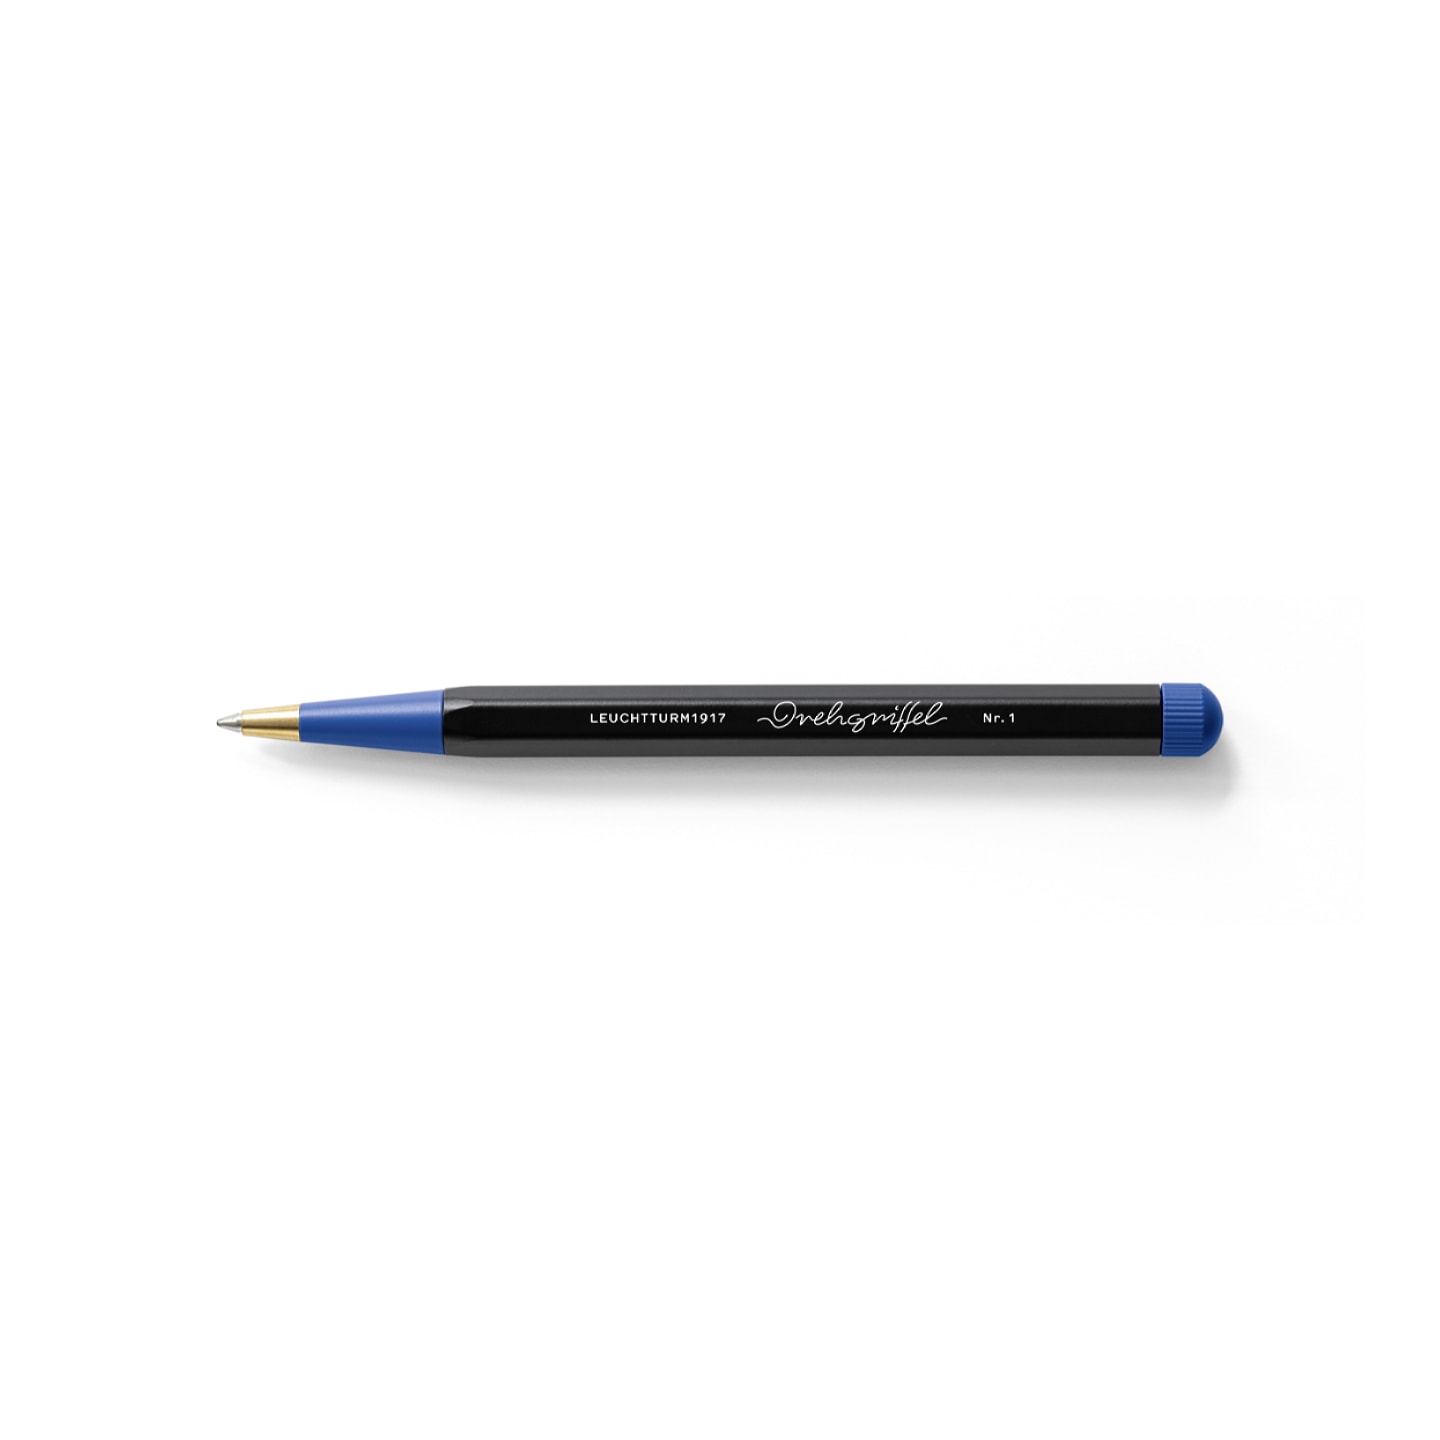 Ручка шариковая Leuchtturm1917 Bauhaus Edition чернила синие корпус Черный+Синий королевский